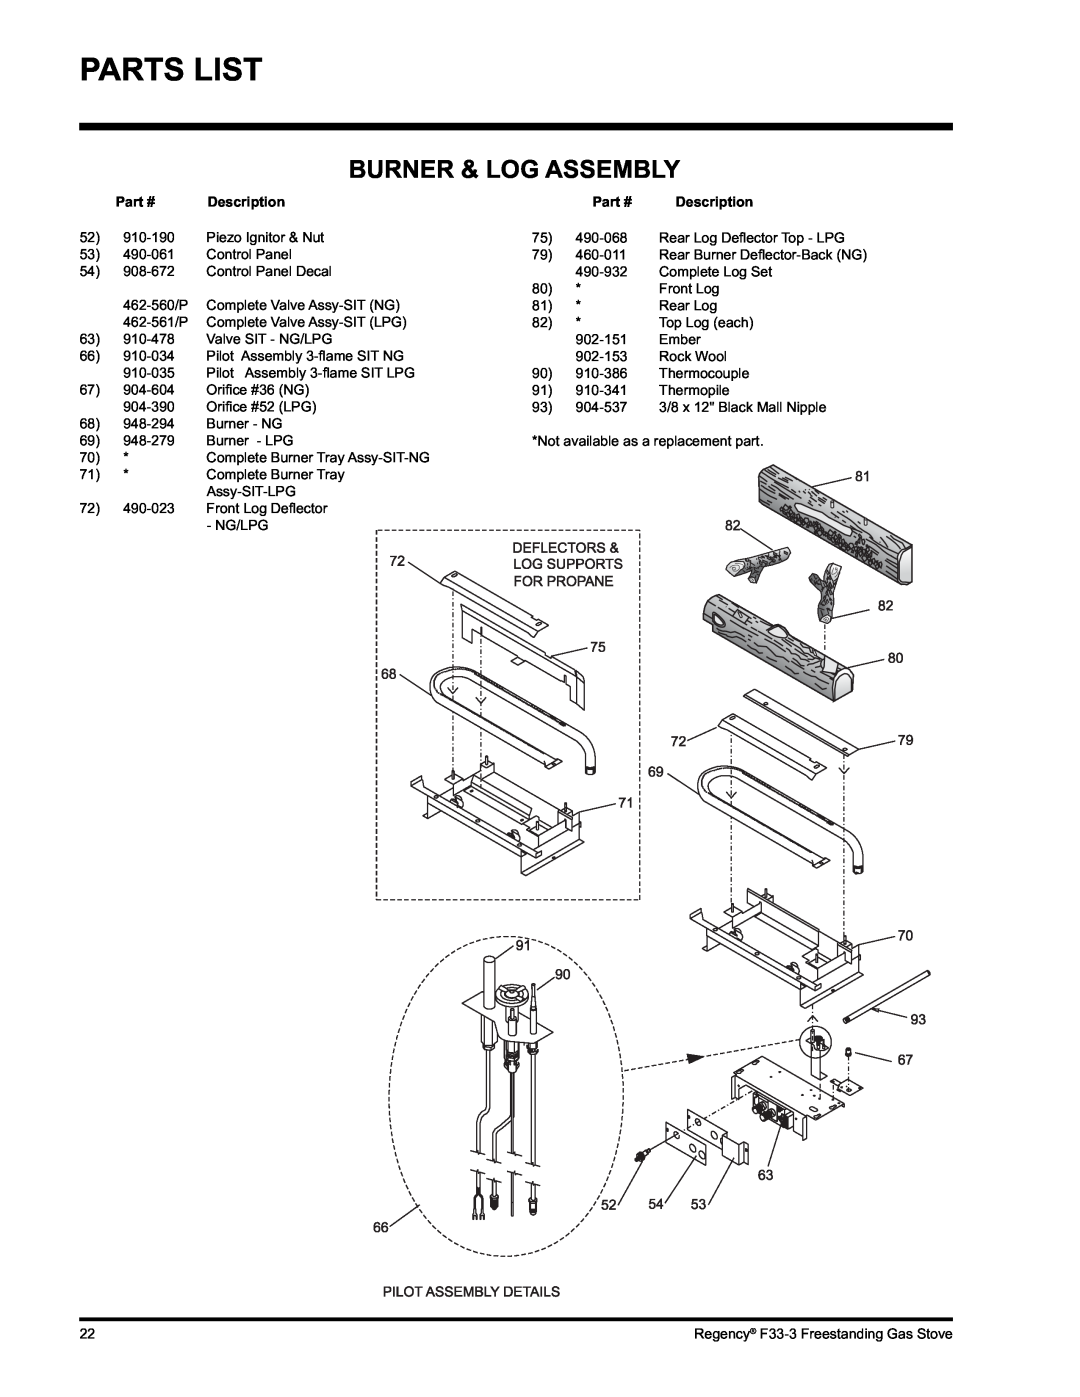 Regency Wraps F33 installation manual Burner & Log Assembly, Parts List 